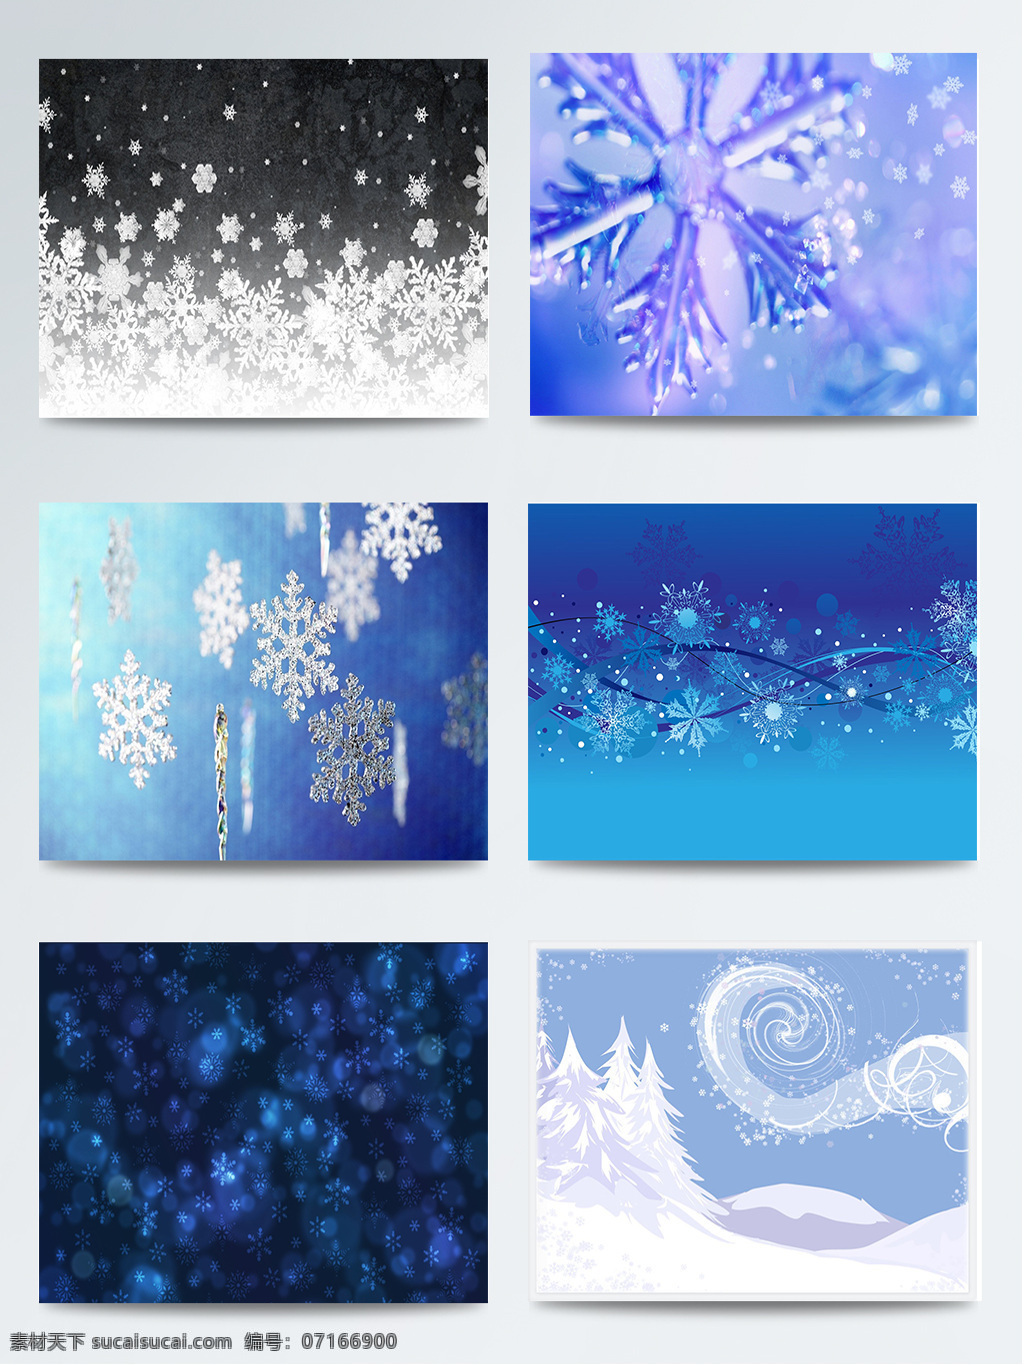 组 天蓝色 雪花 背景 图 白色 冬季 蓝色 浅白色 浅蓝色 深蓝色 水蓝色